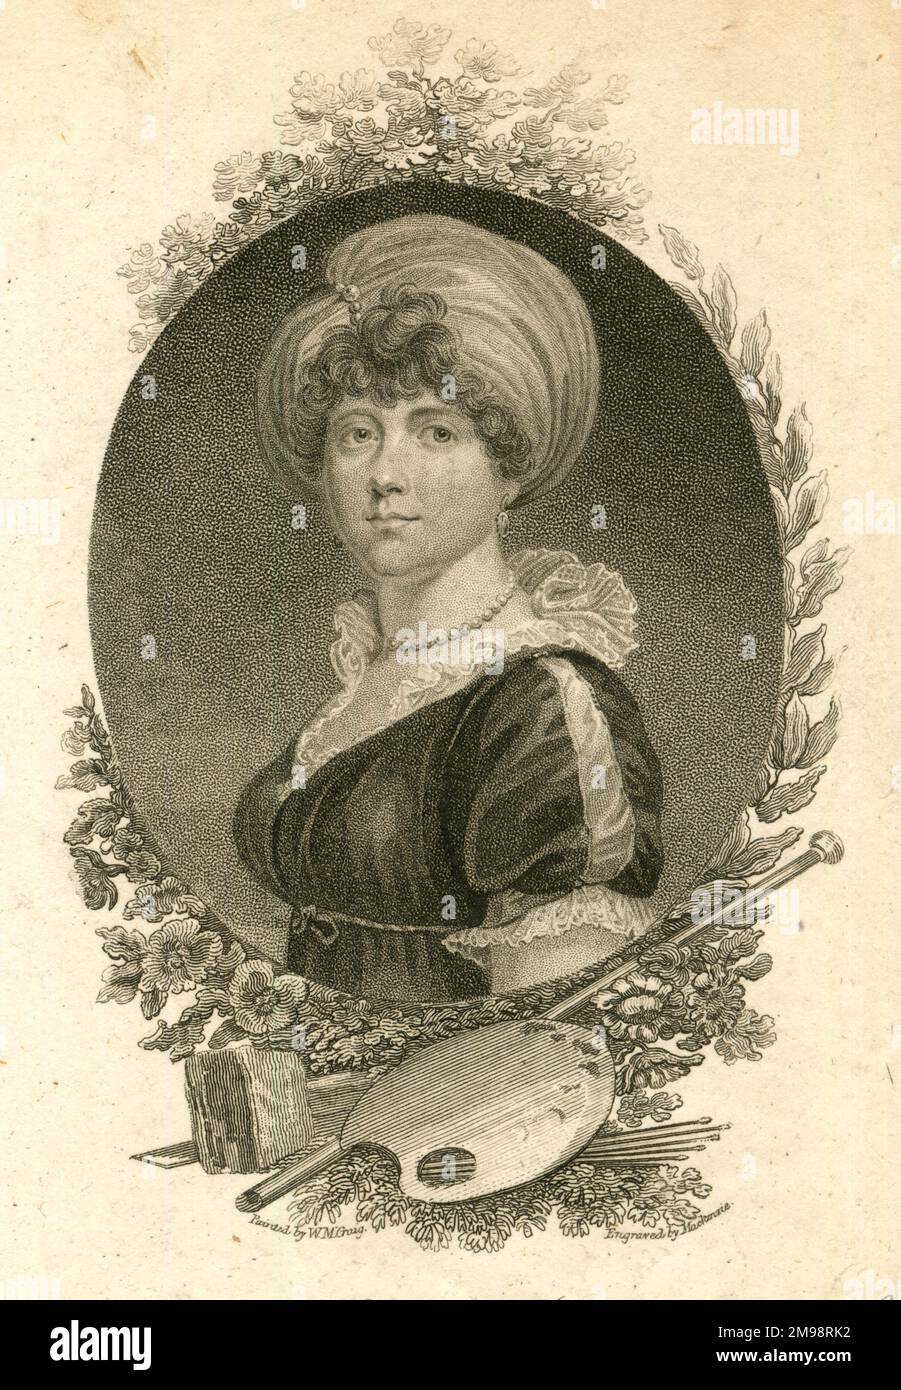 Princesa Isabel del Reino Unido (1770-1840), séptima hija y tercera hija del rey Jorge III Foto de stock